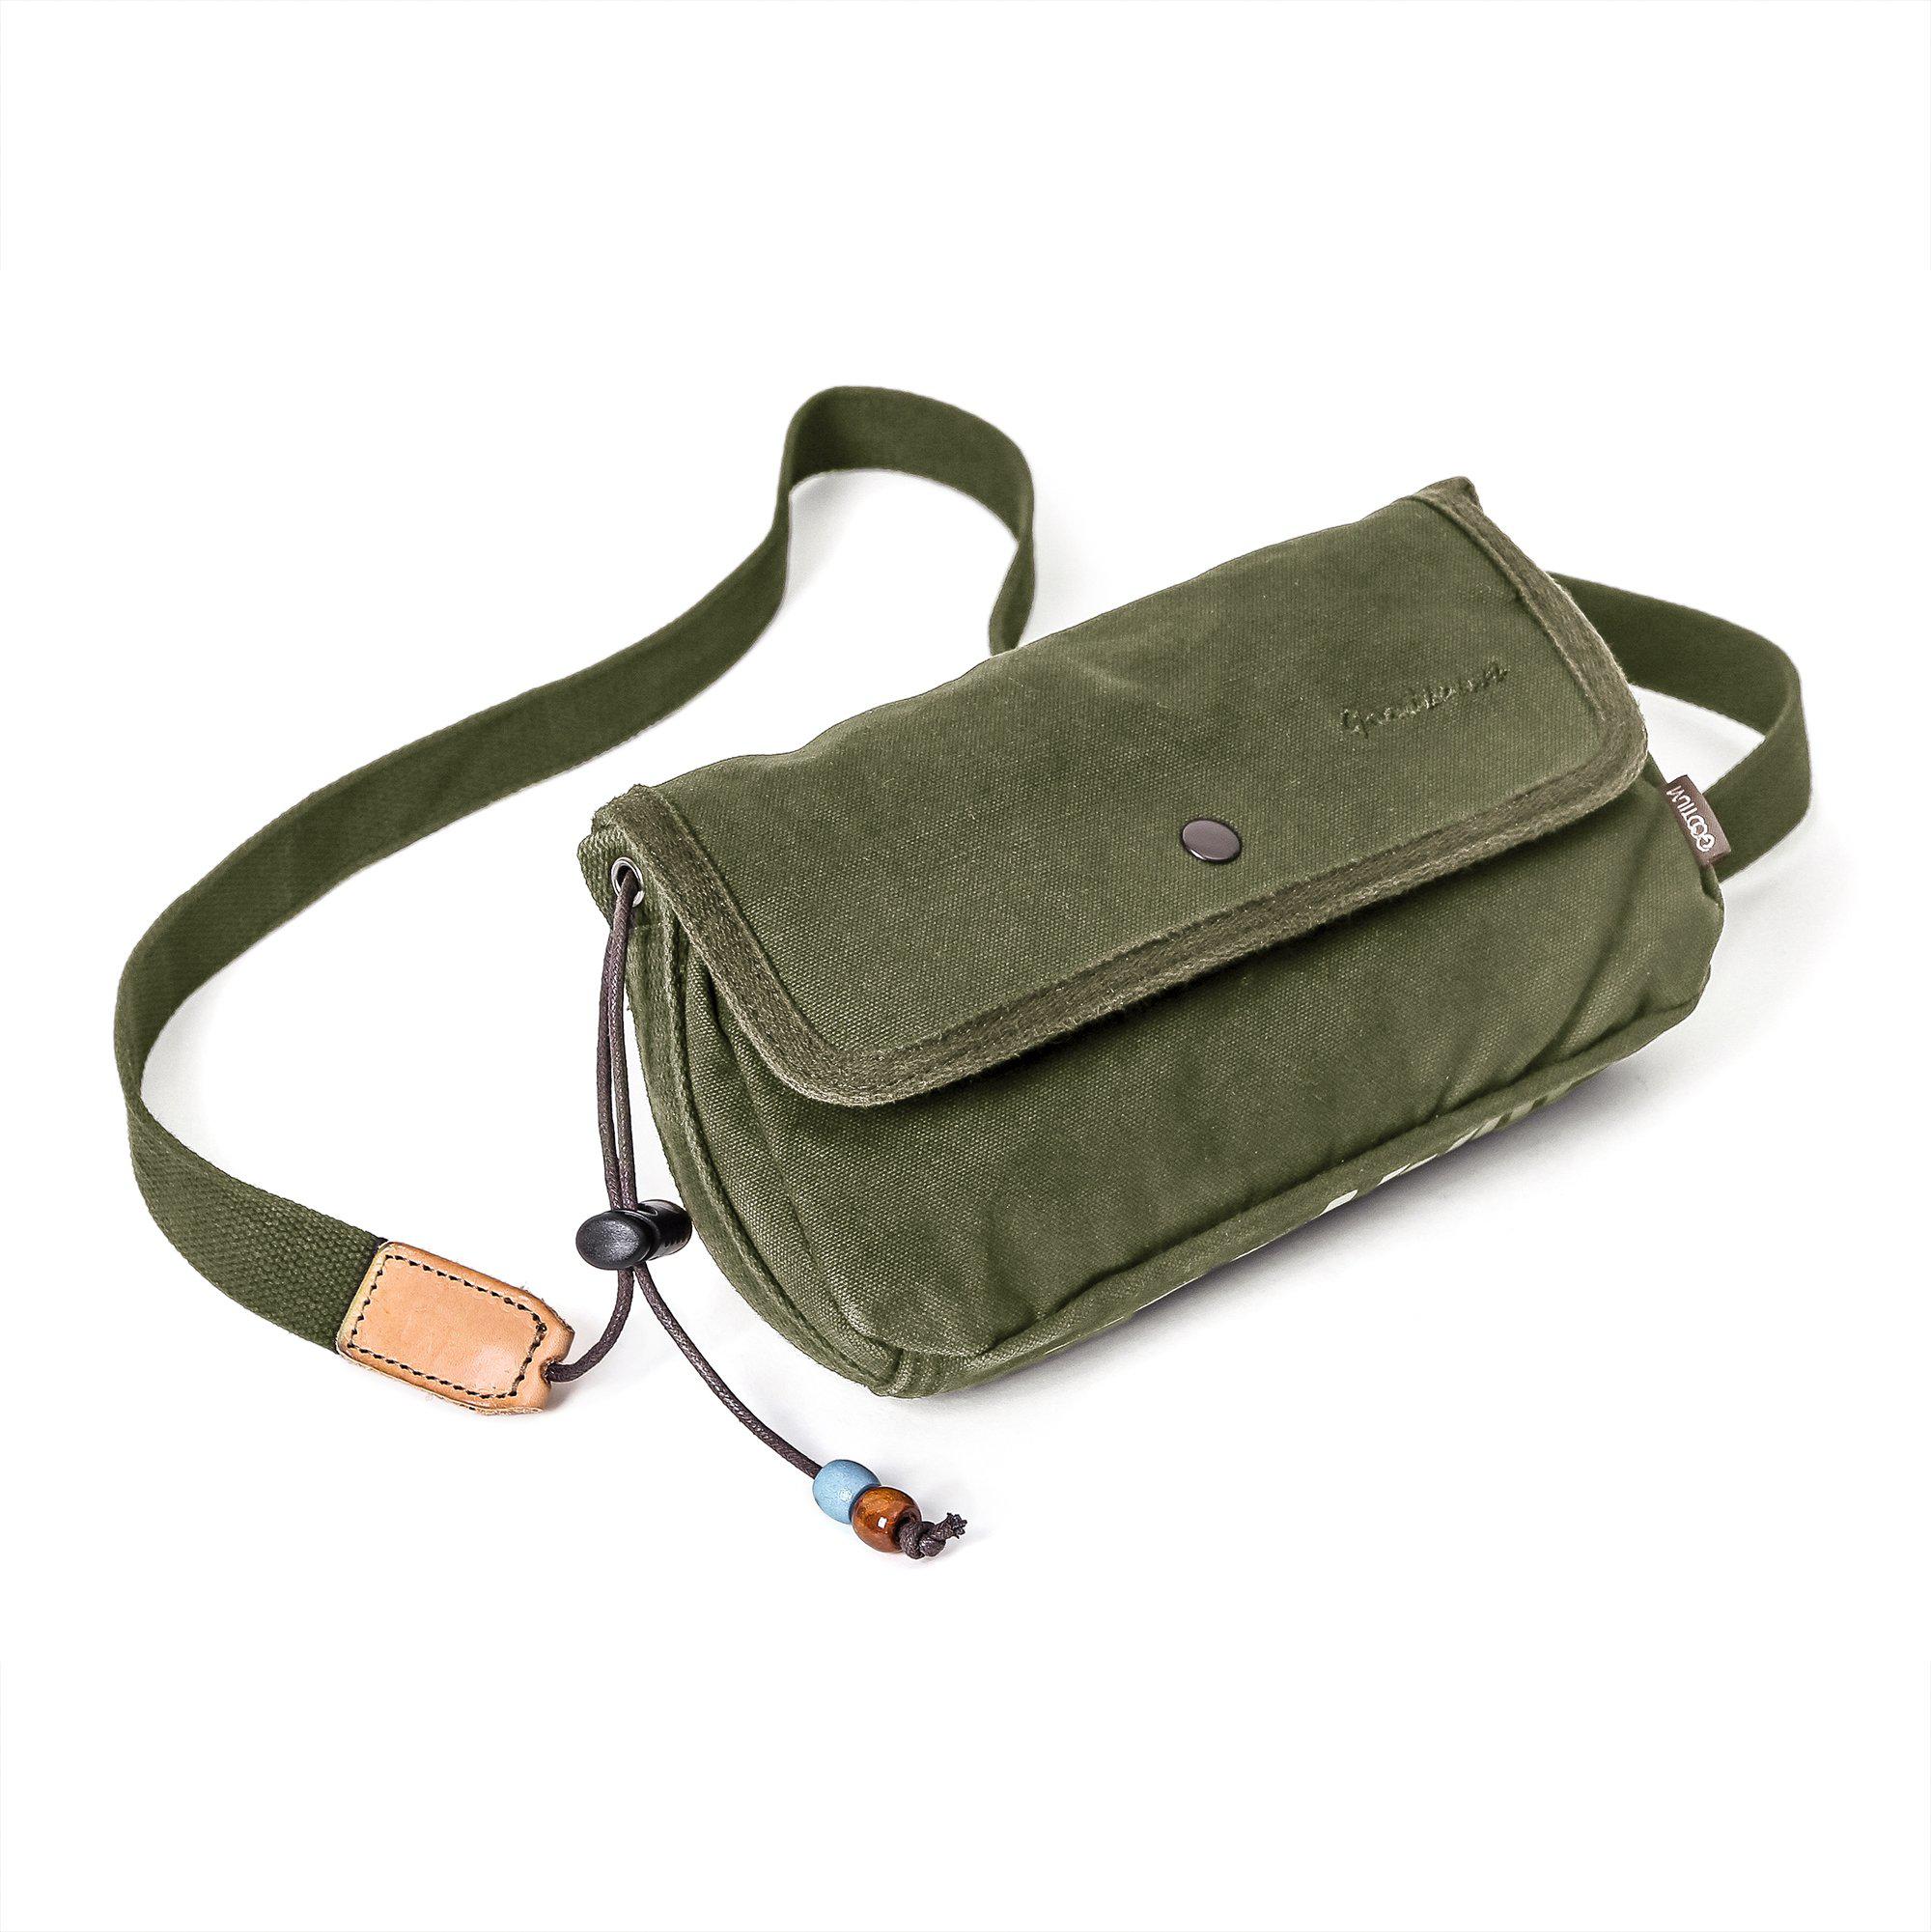 gootium small cross body bag women purse messenger bag green 4